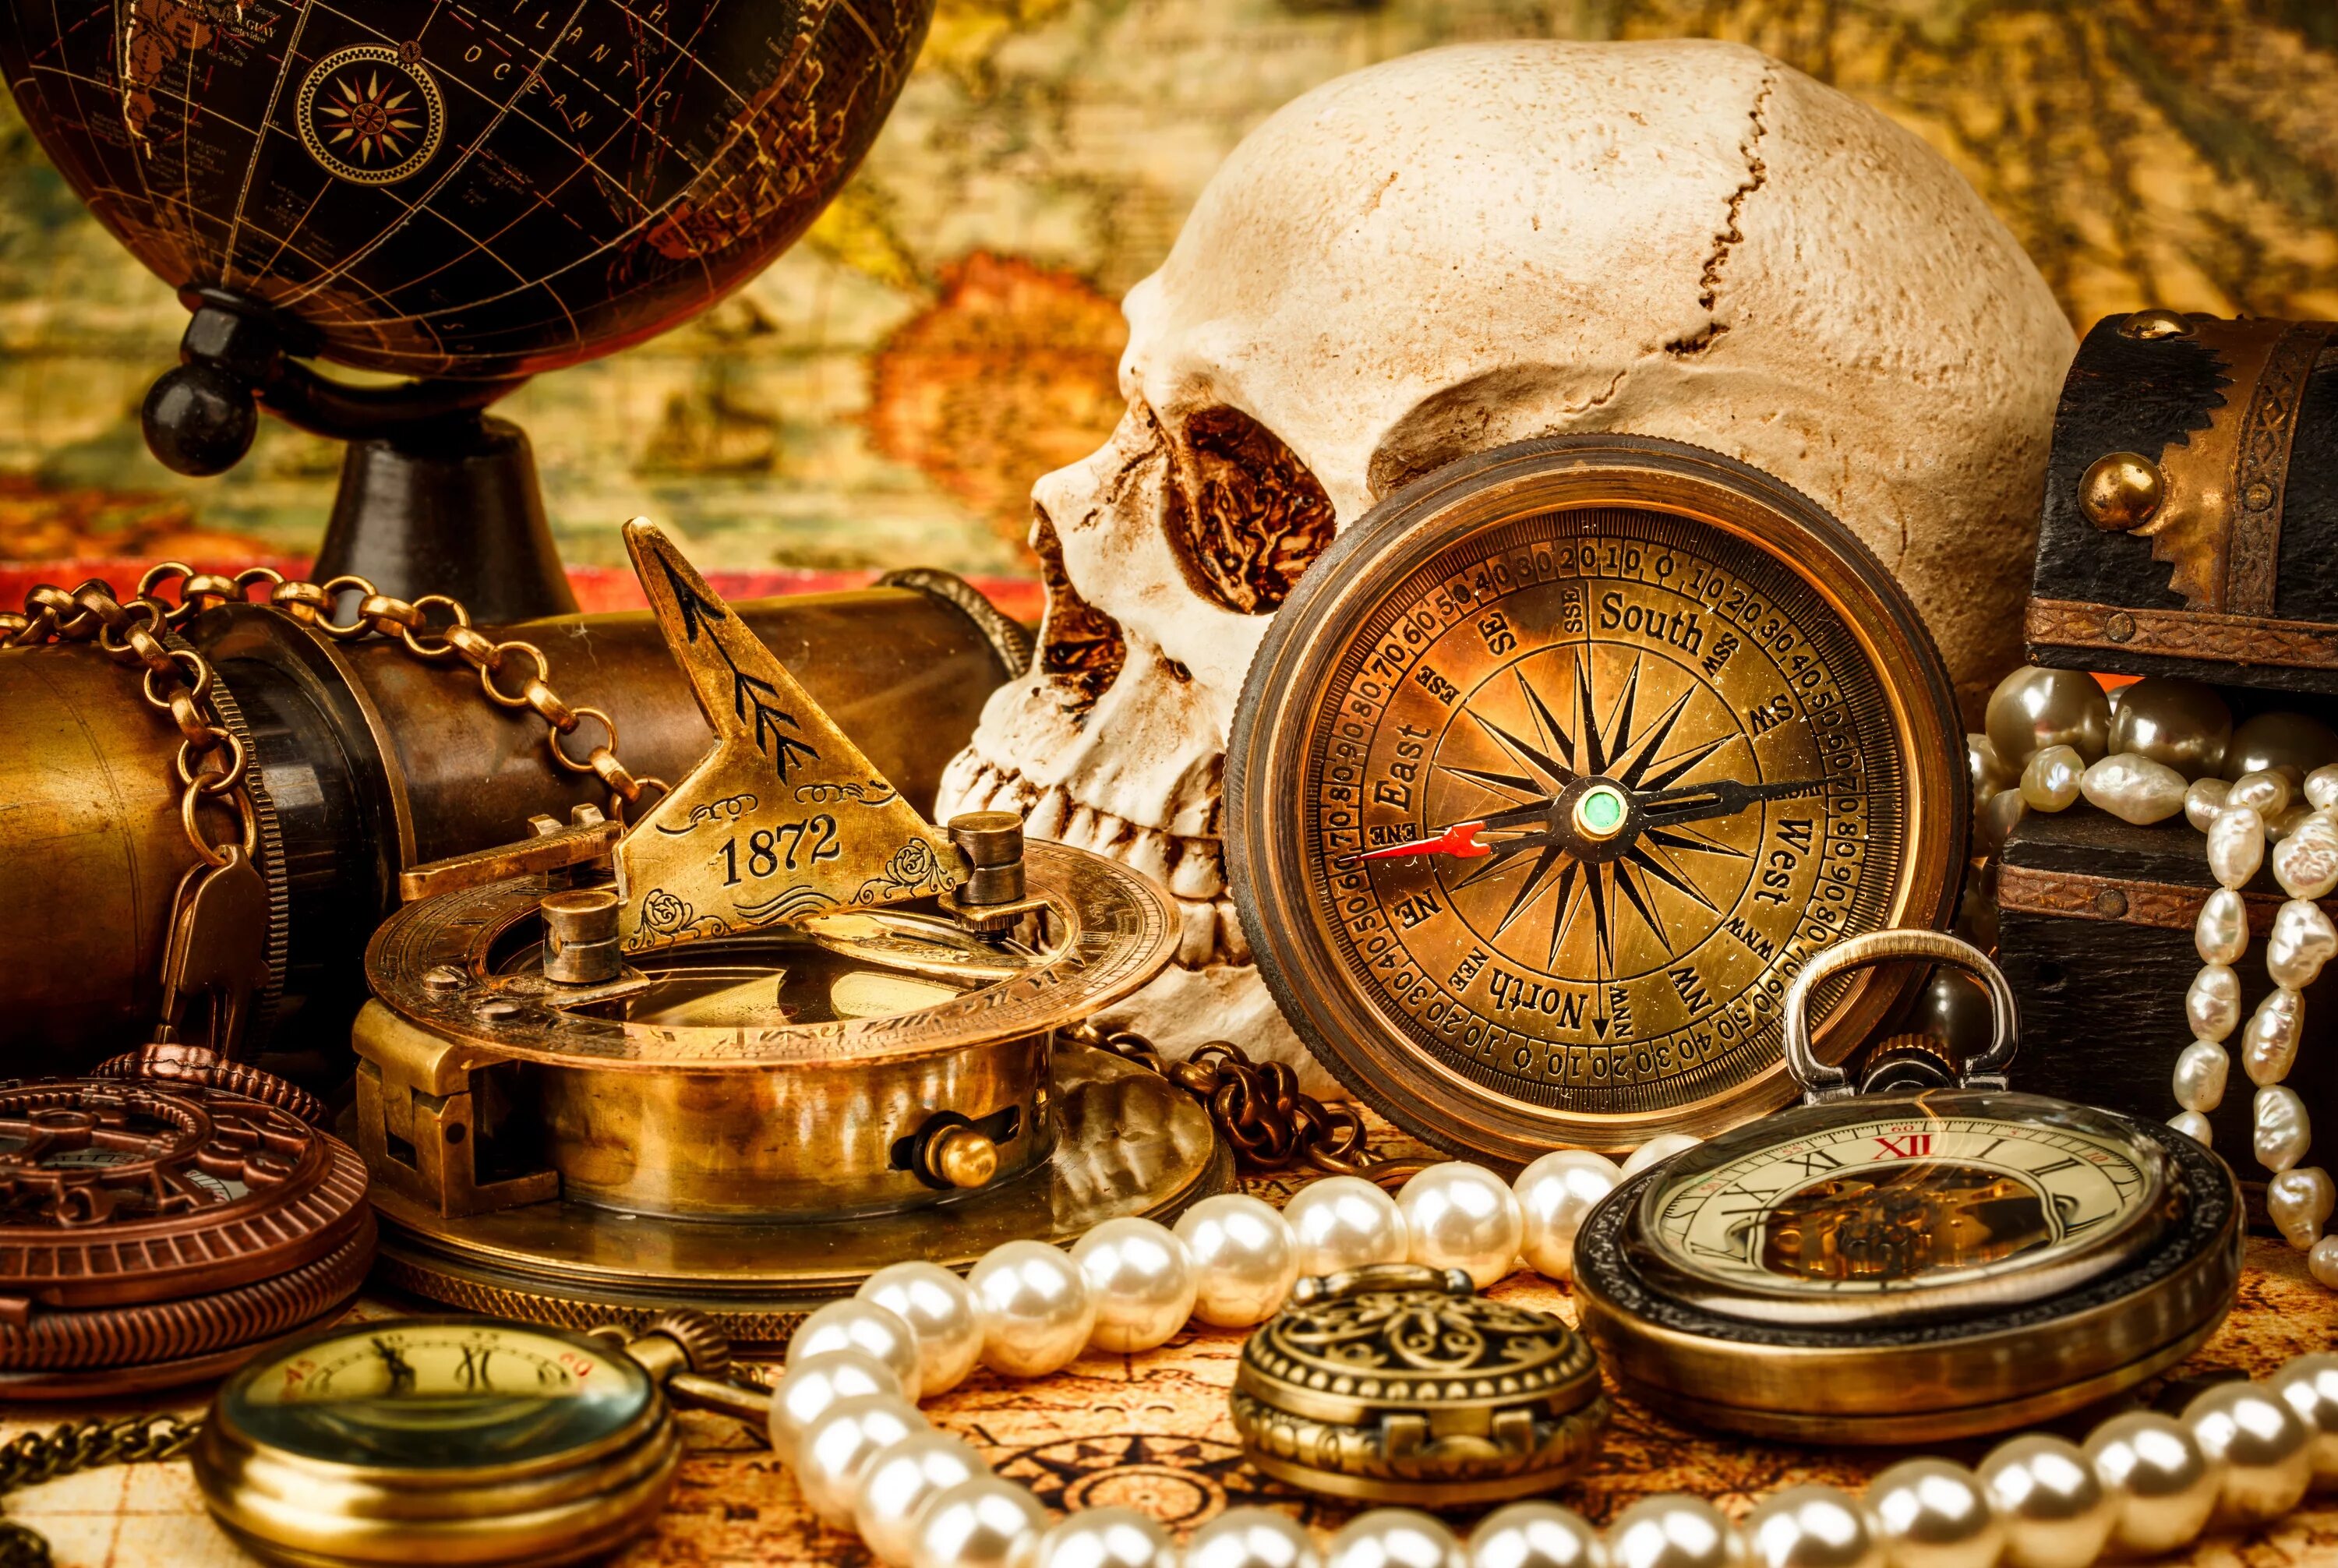 Старинный компас. Пиратские сокровища. Натюрморт с часами. Натюрморт с компасом.